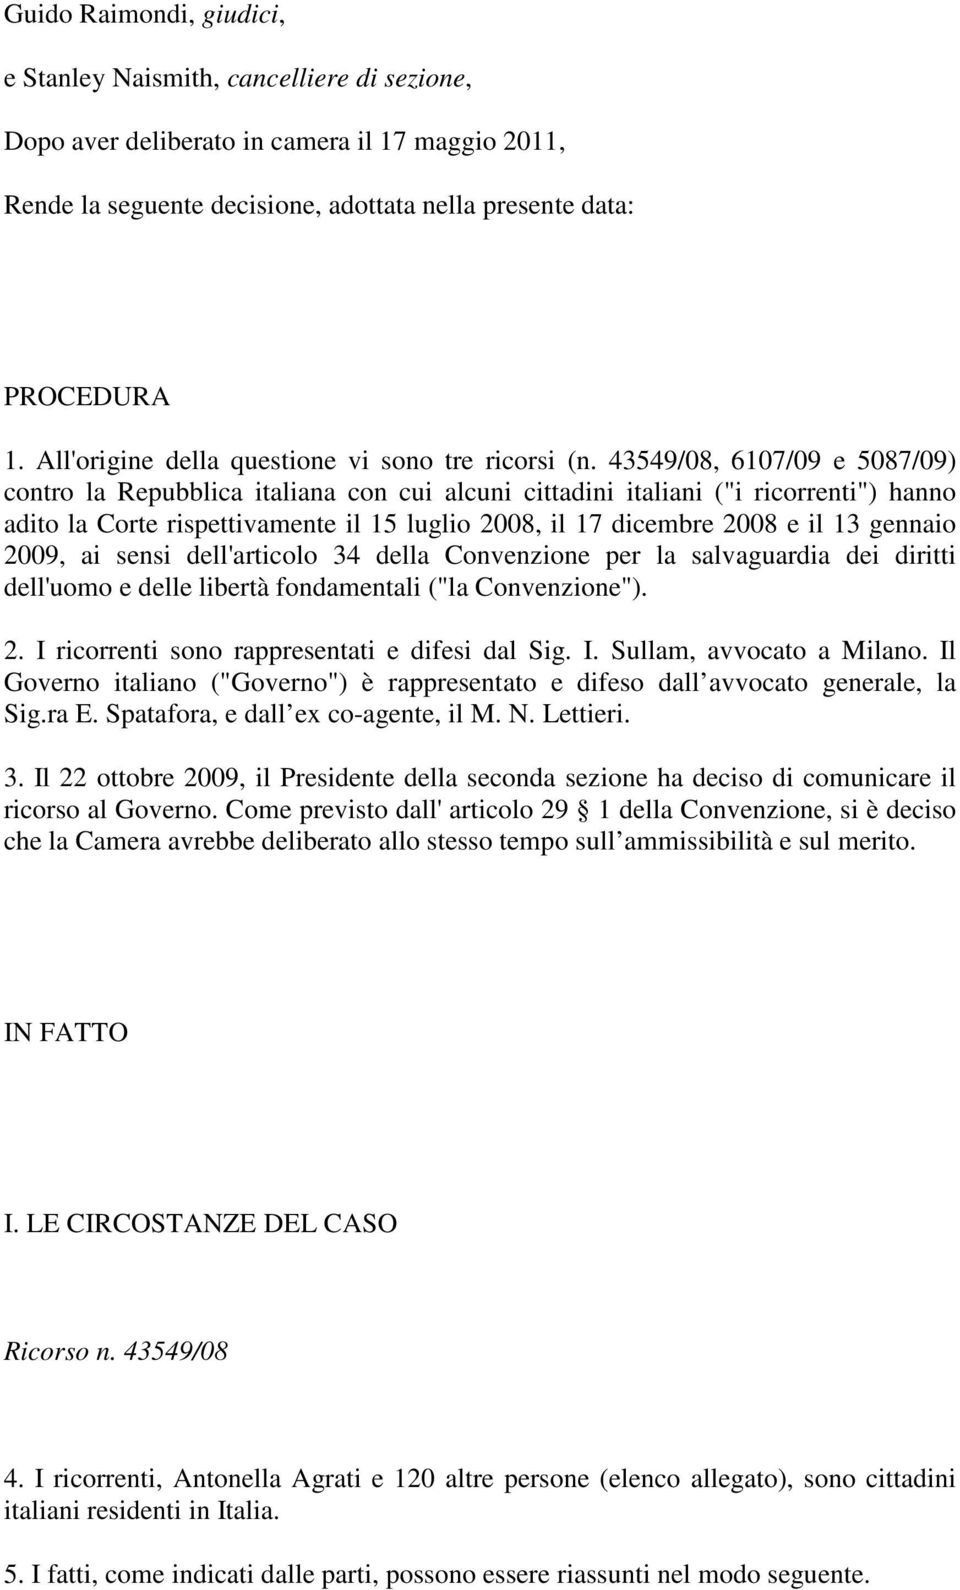 43549/08, 6107/09 e 5087/09) contro la Repubblica italiana con cui alcuni cittadini italiani ("i ricorrenti") hanno adito la Corte rispettivamente il 15 luglio 2008, il 17 dicembre 2008 e il 13